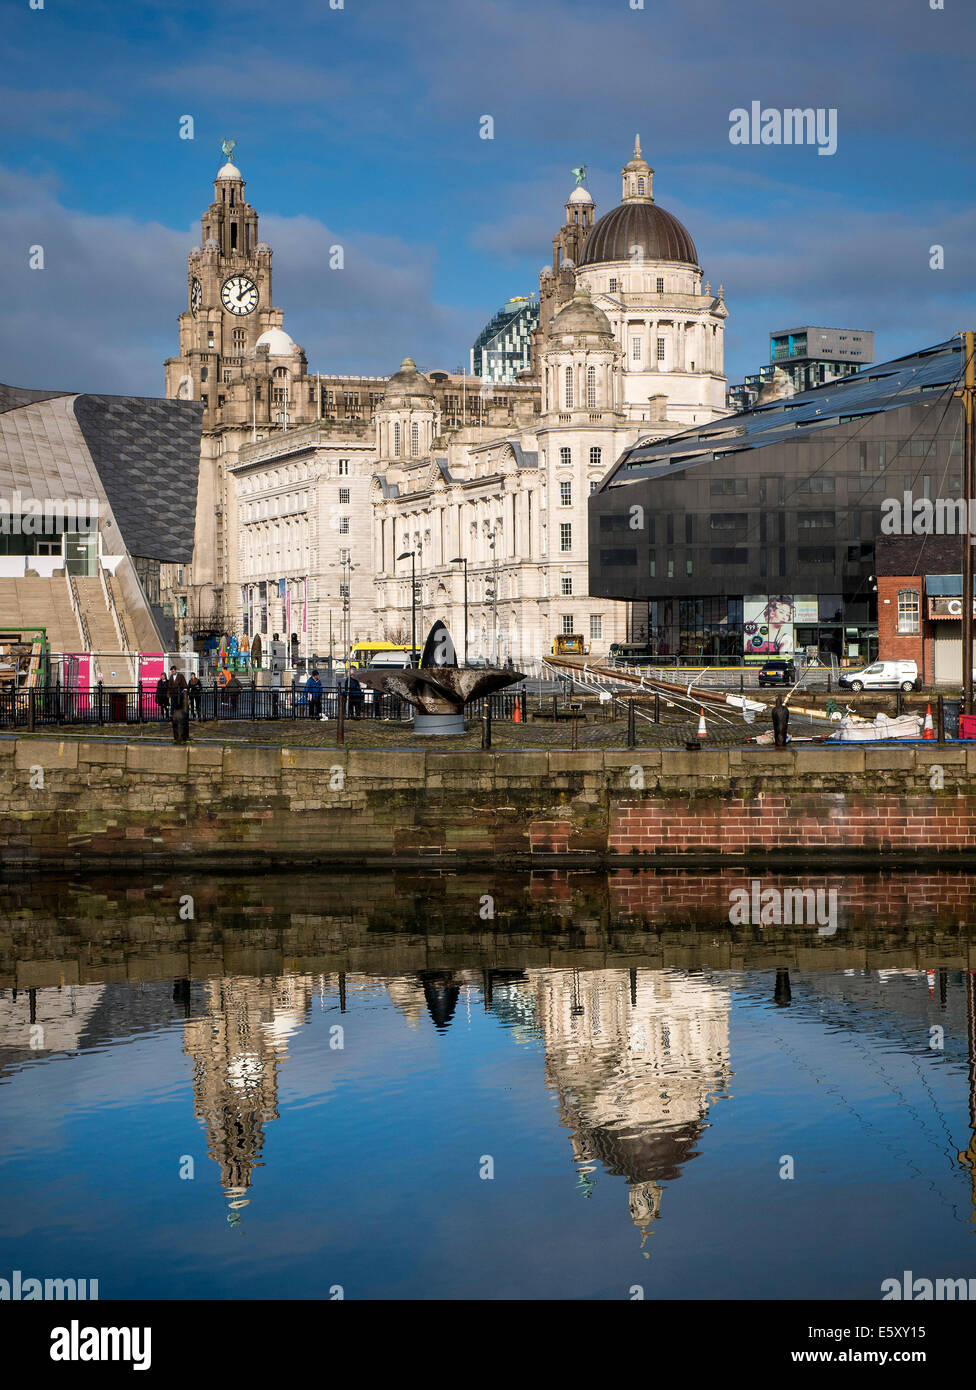 Hafen von Tyne und Liver Building vom Albert Dock, Liverpool. Touristische destination Stockfoto